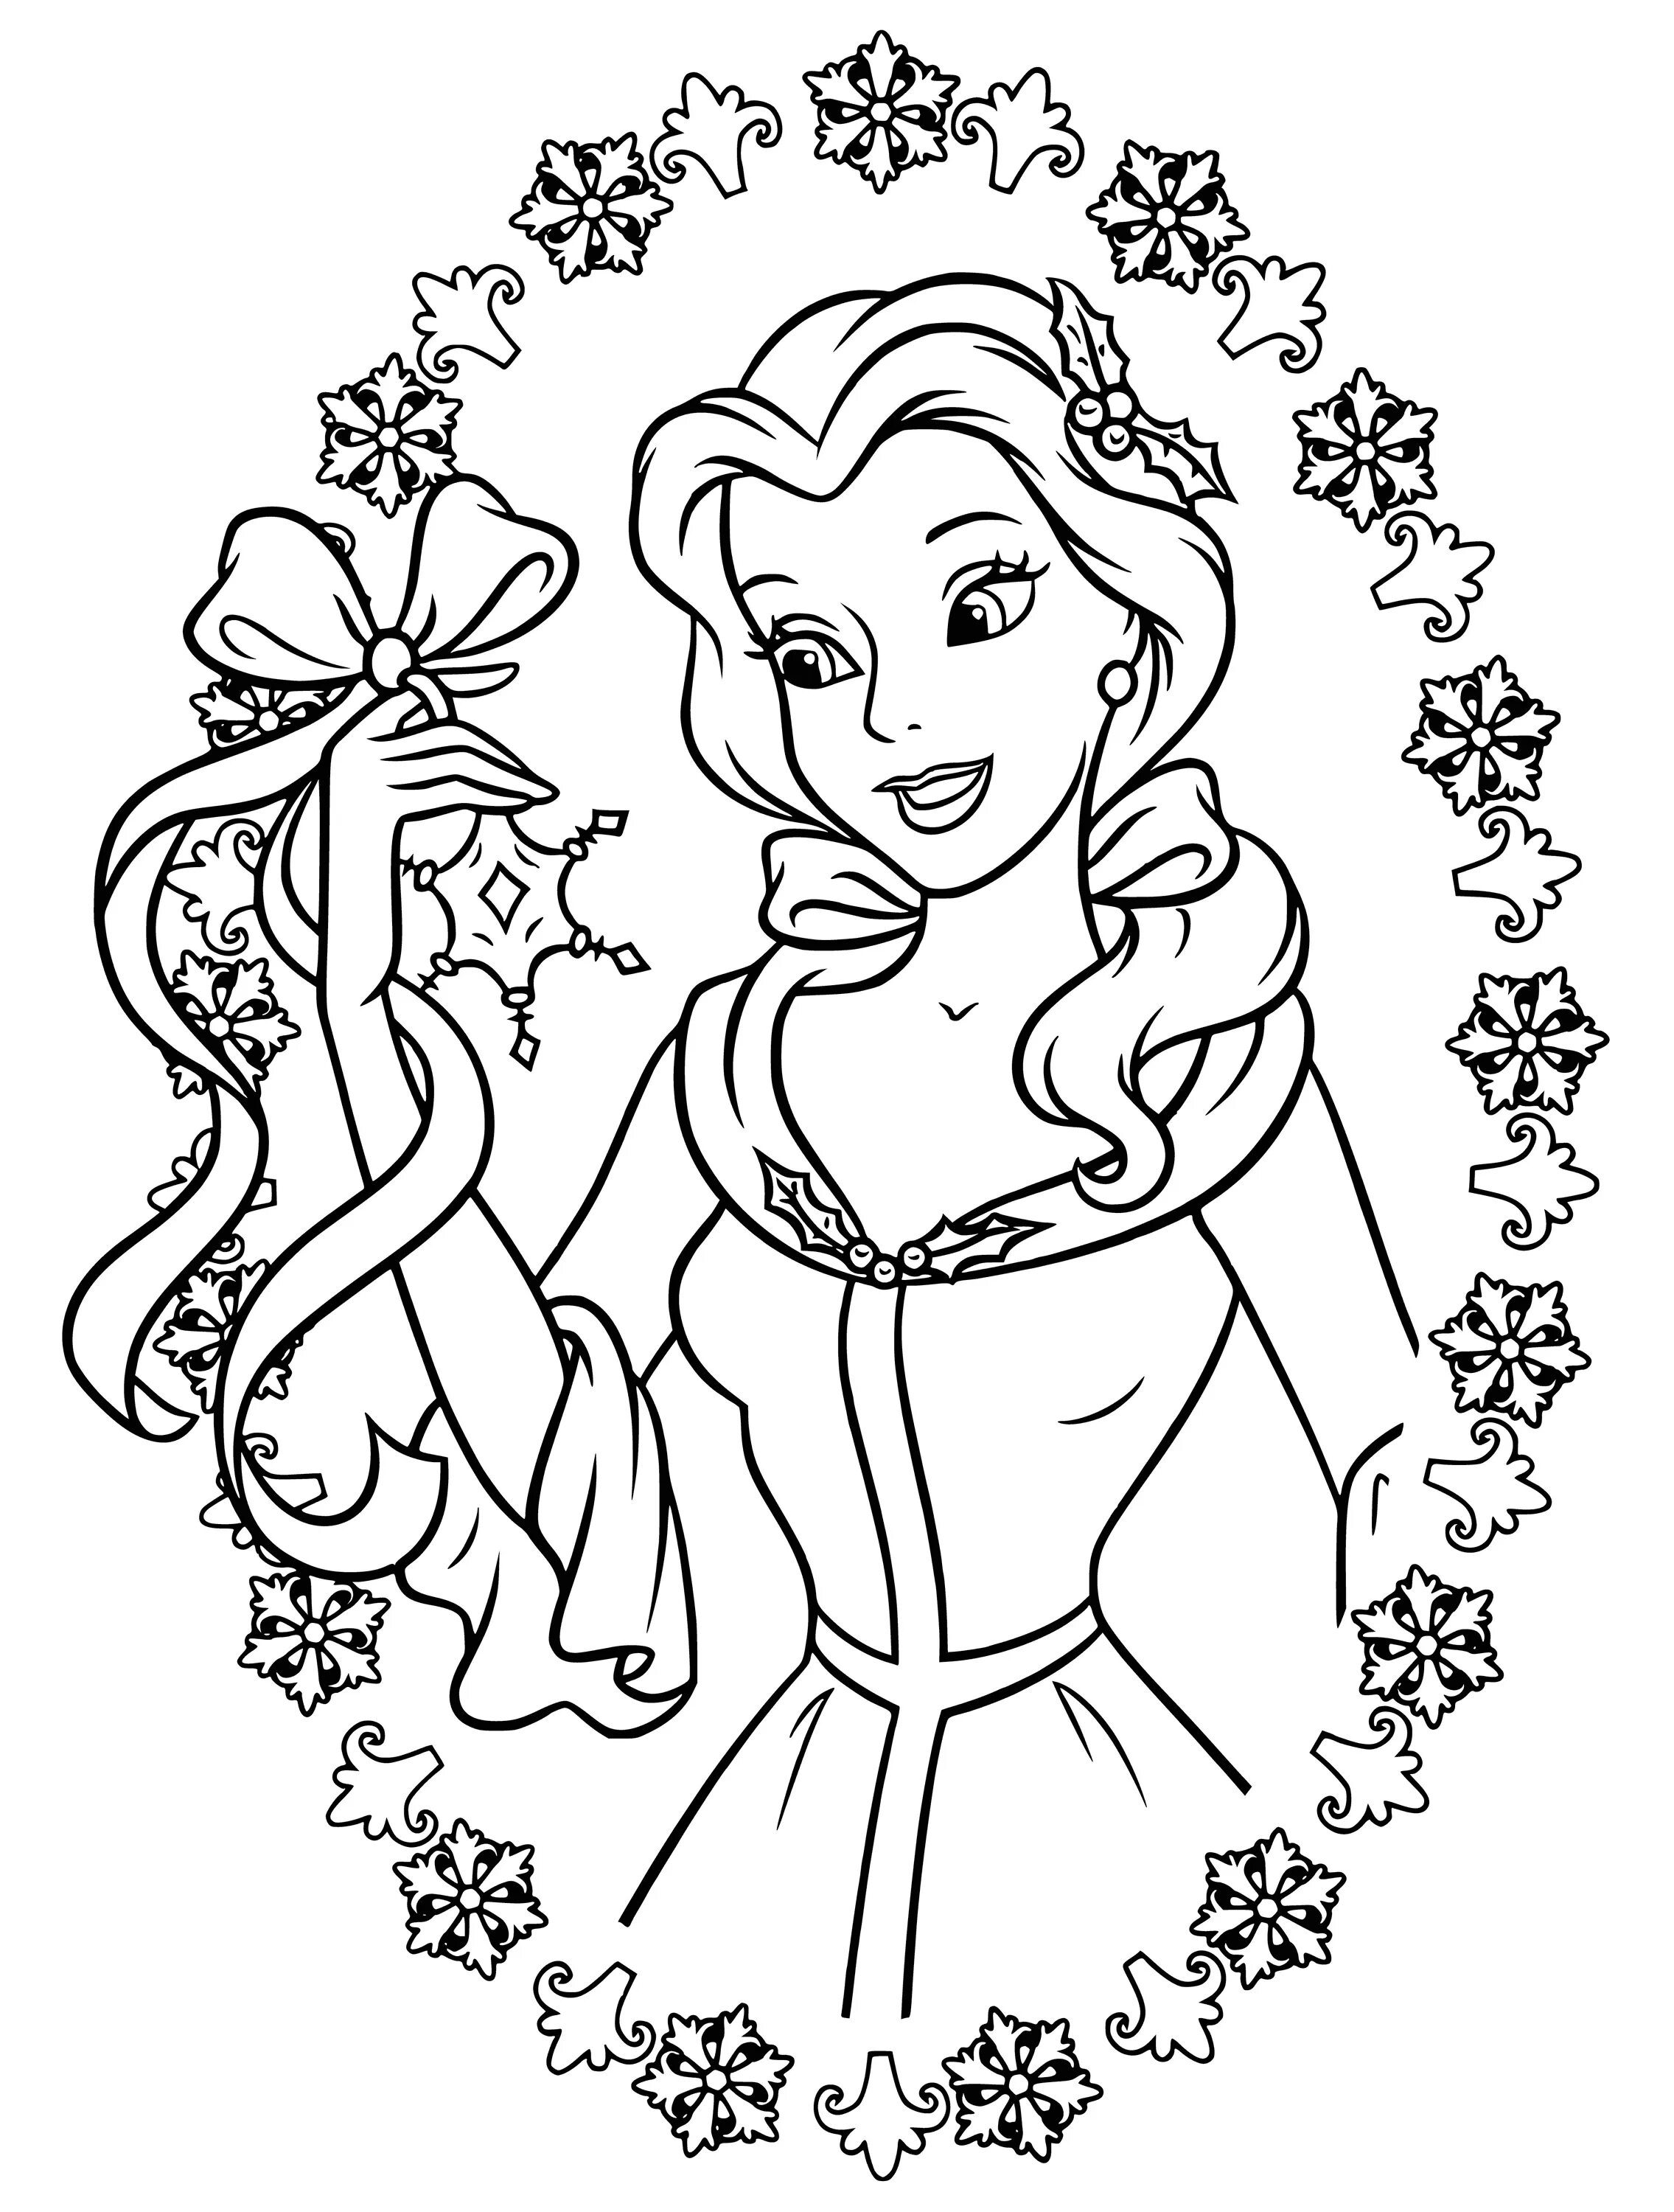 Cartoon princesses #2